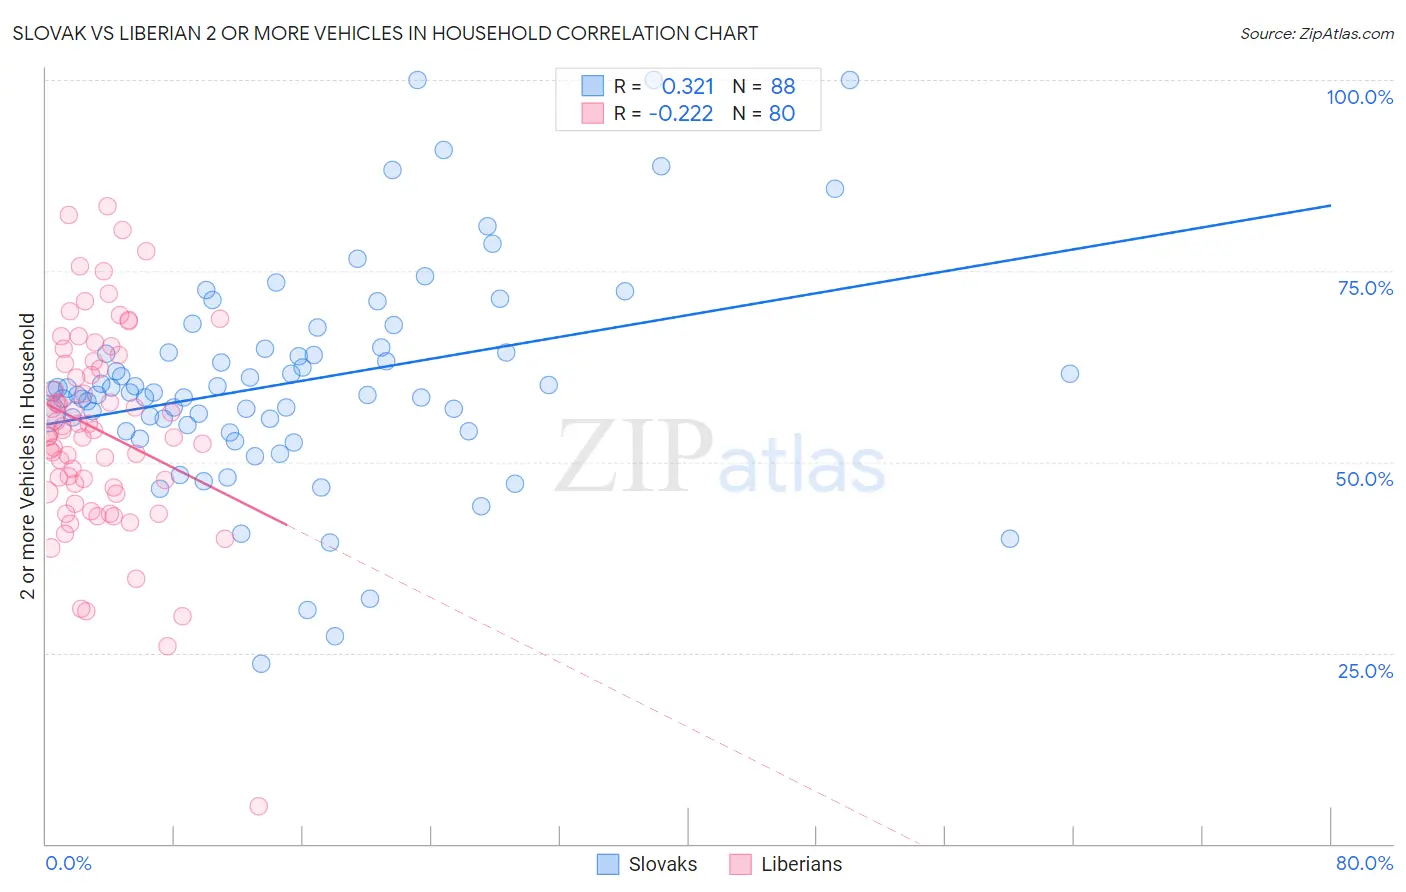 Slovak vs Liberian 2 or more Vehicles in Household